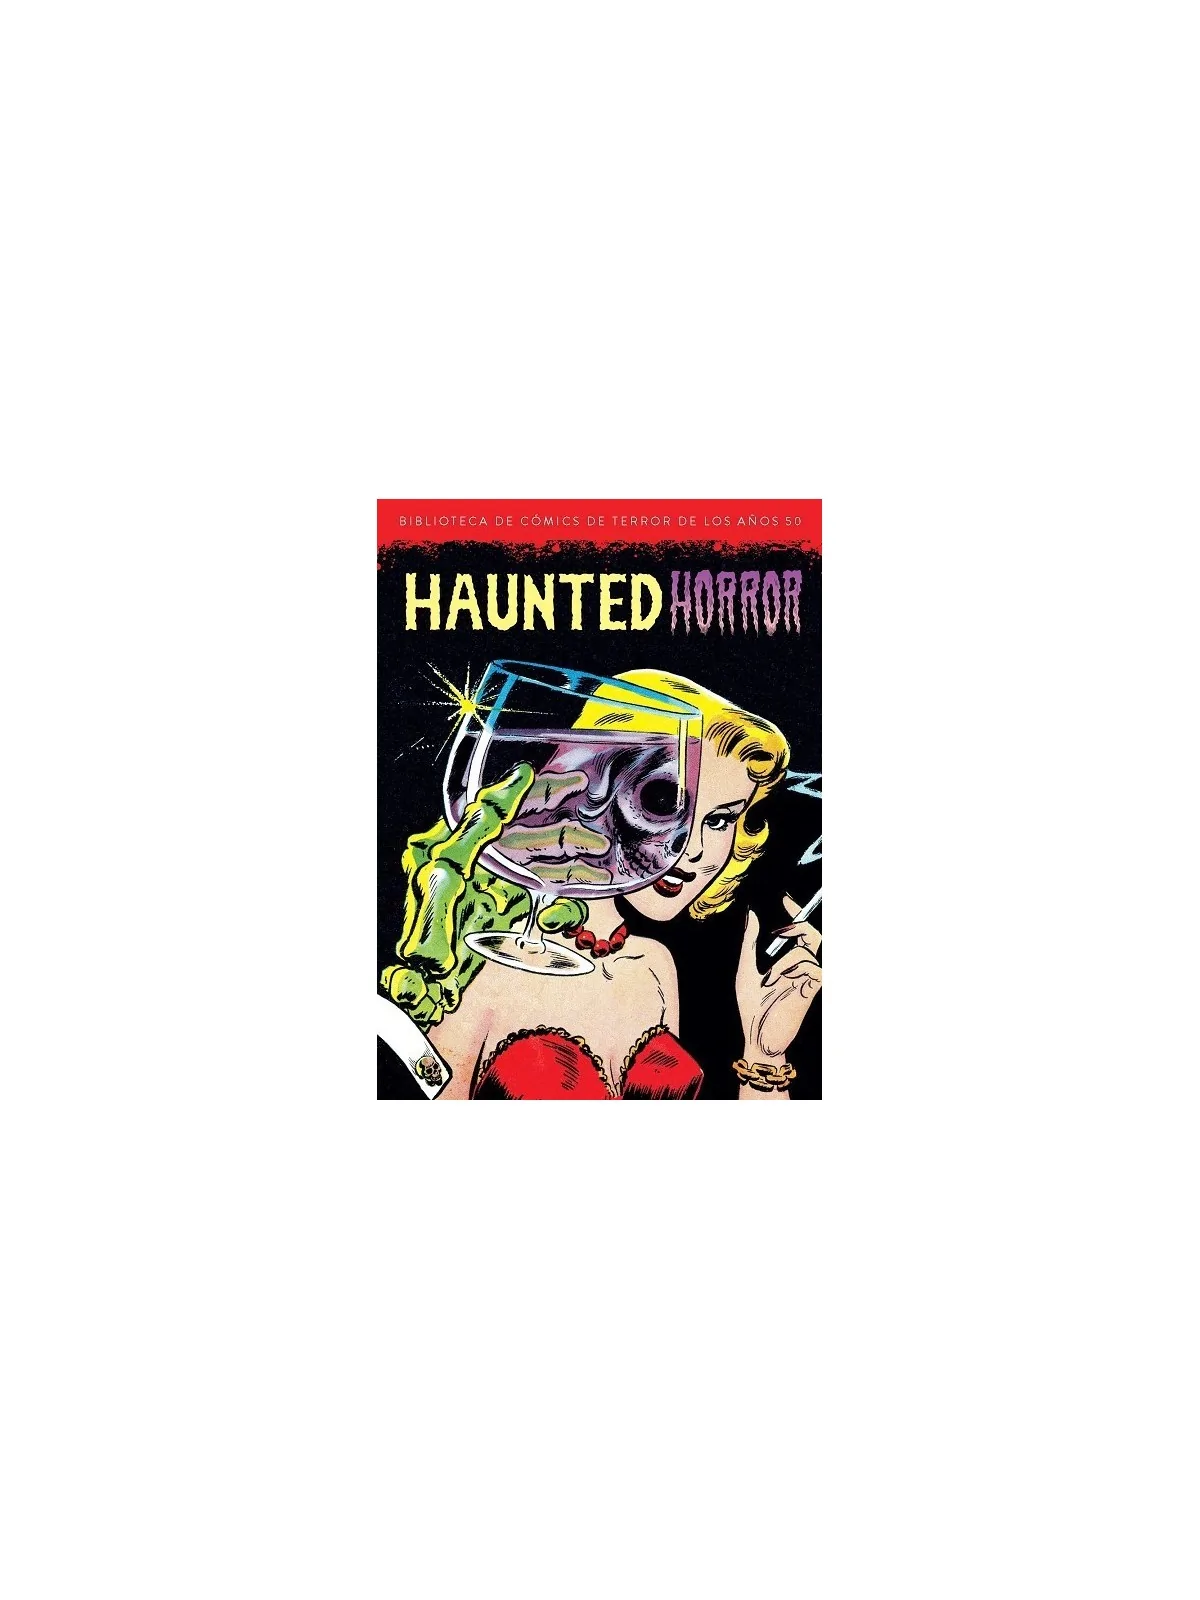 Comprar Haunted Horror: Biblioteca de Cómics de Terror de los años 50 